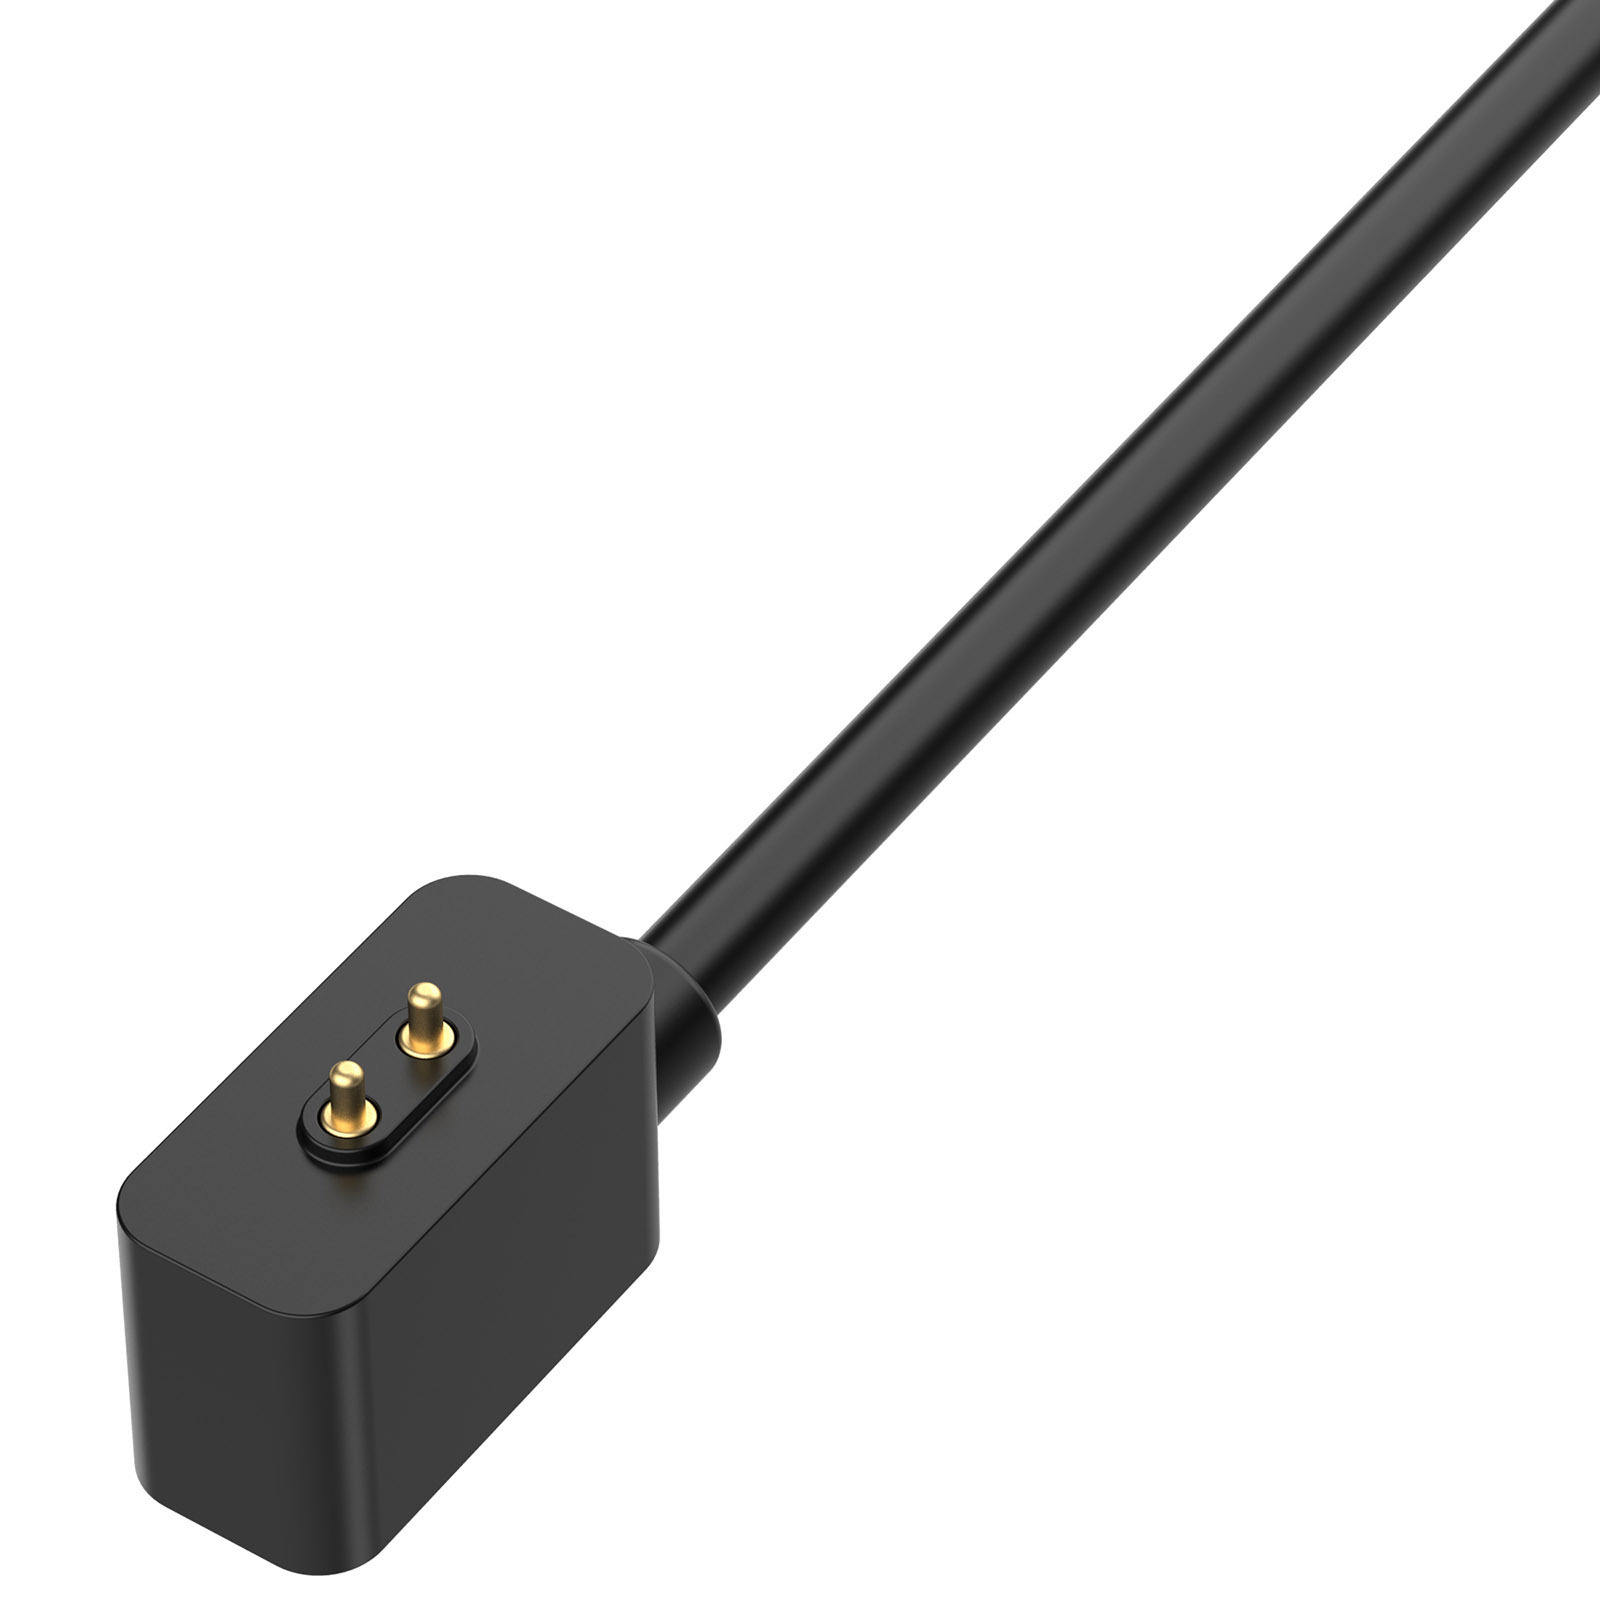 INF Band / Ladestation, Schwarz 8 Redmi für Mi Band 2, USB-Smartwatch-Ladegerät